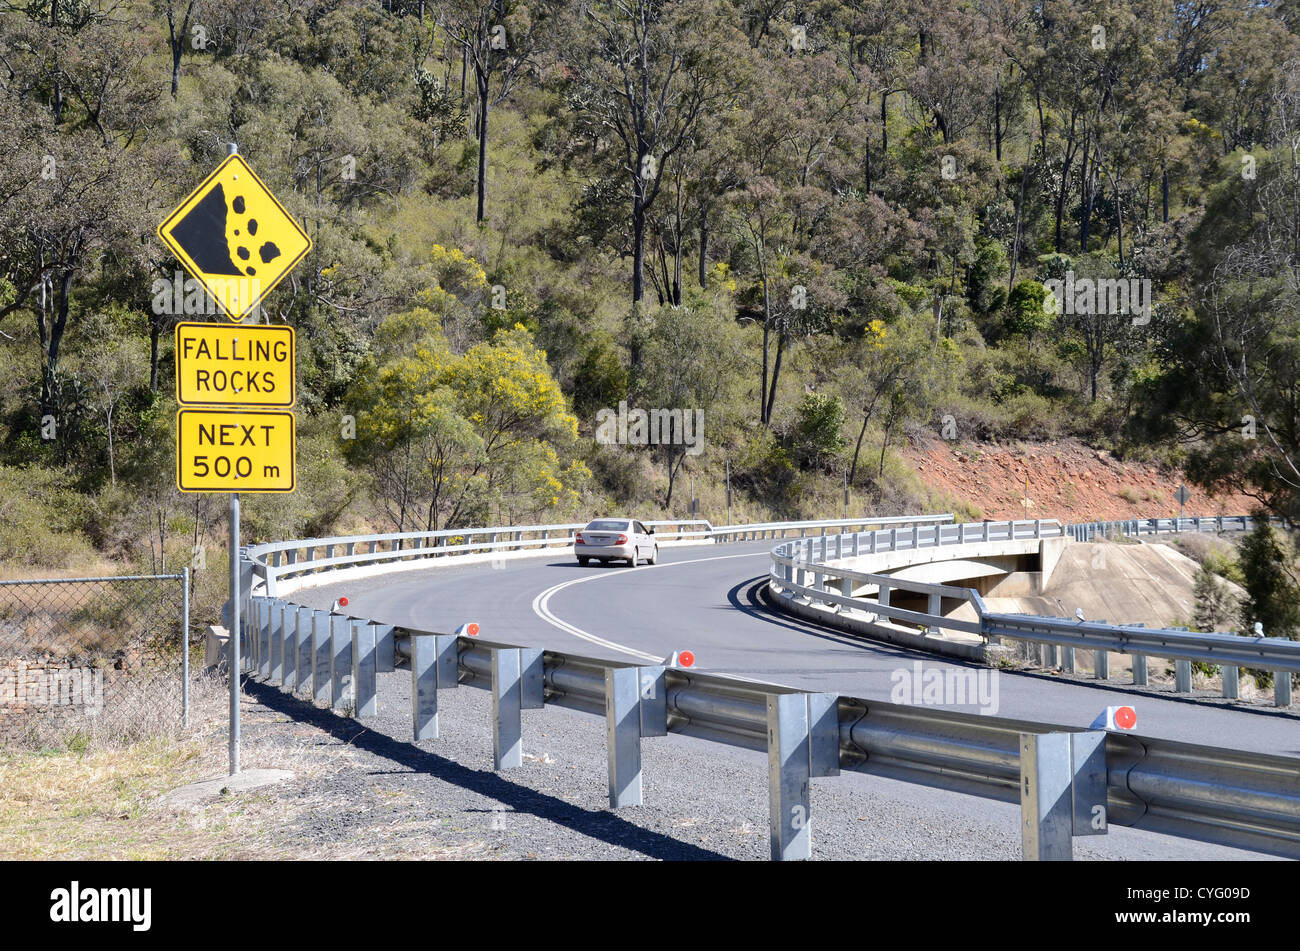 Les chutes de pierres route signe. Esk-Kilcoy Road Queensland Australie Banque D'Images